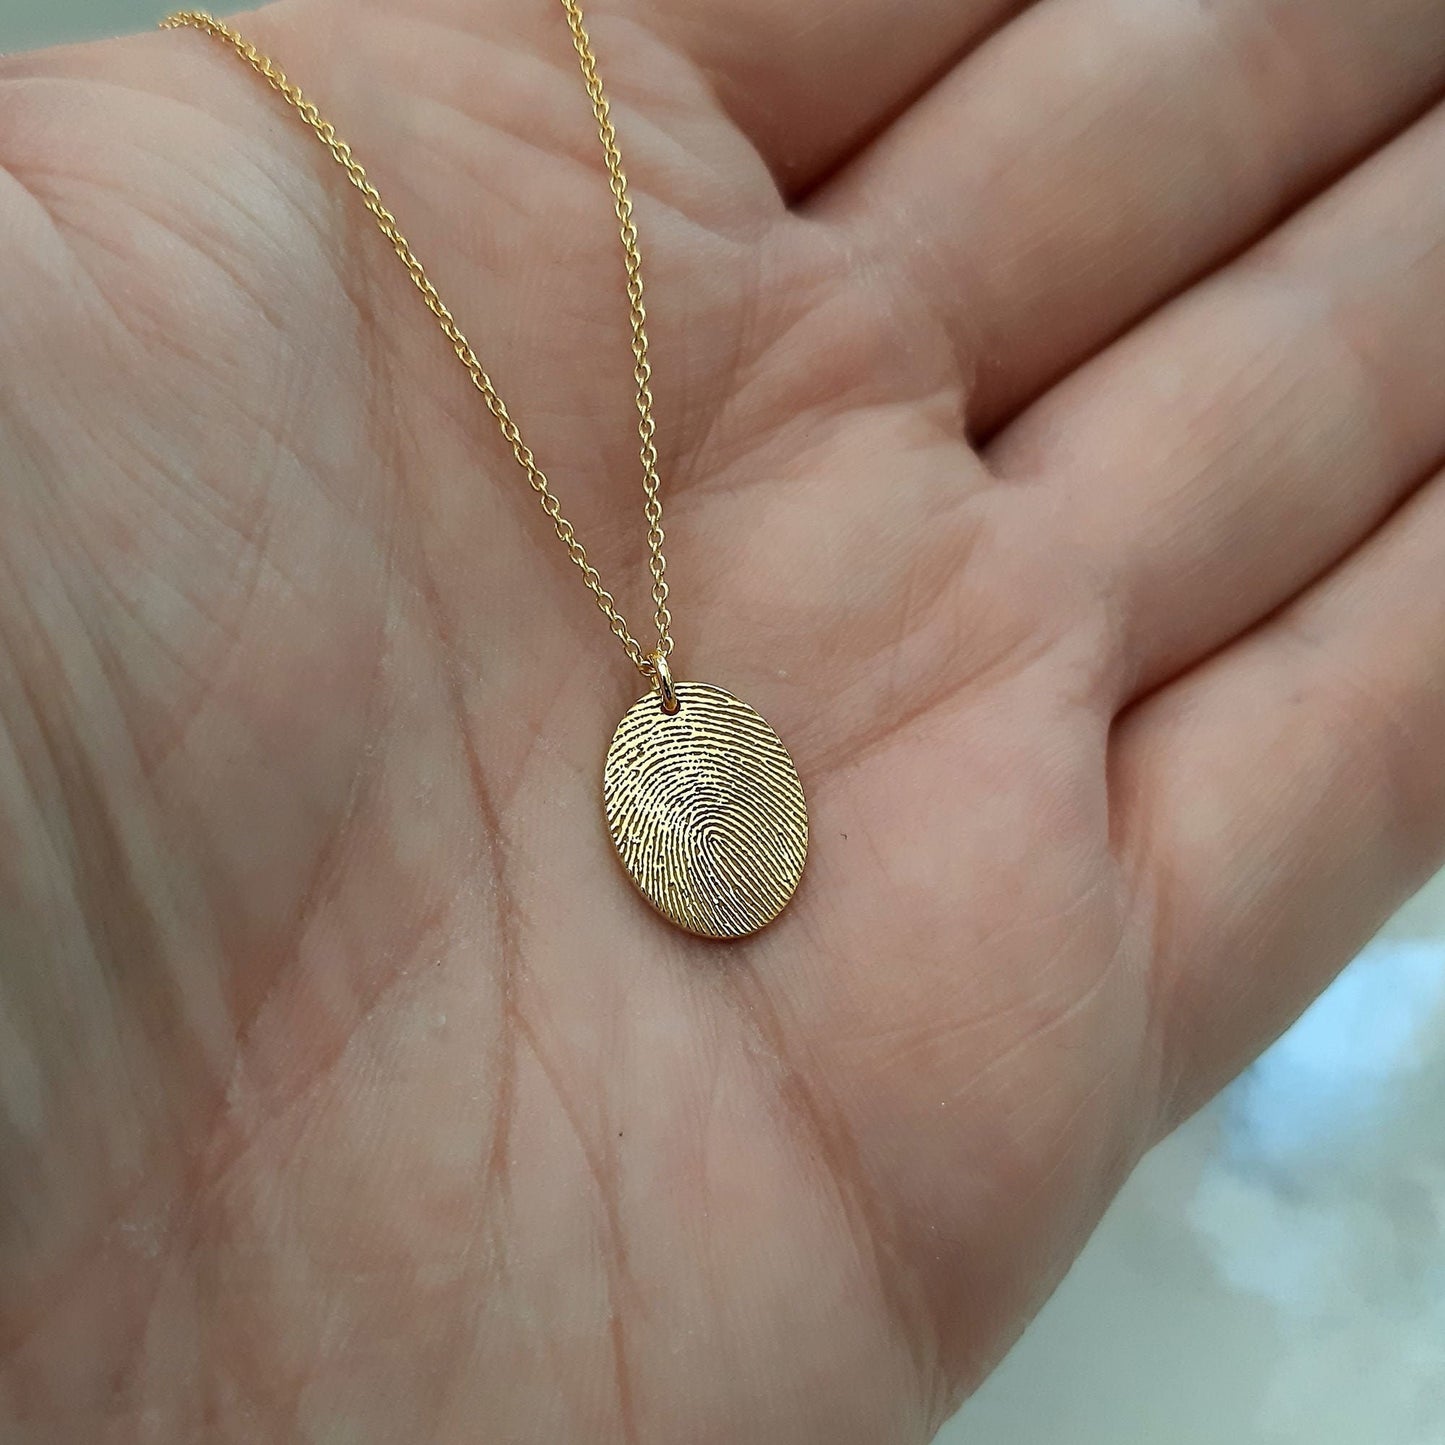 14k Yellow gold Custom Fingerprint Necklace, Fingerprint pendant, Memorial Jewelry, Engraved Finger Print, Gold Jewelry, 14k gold necklace